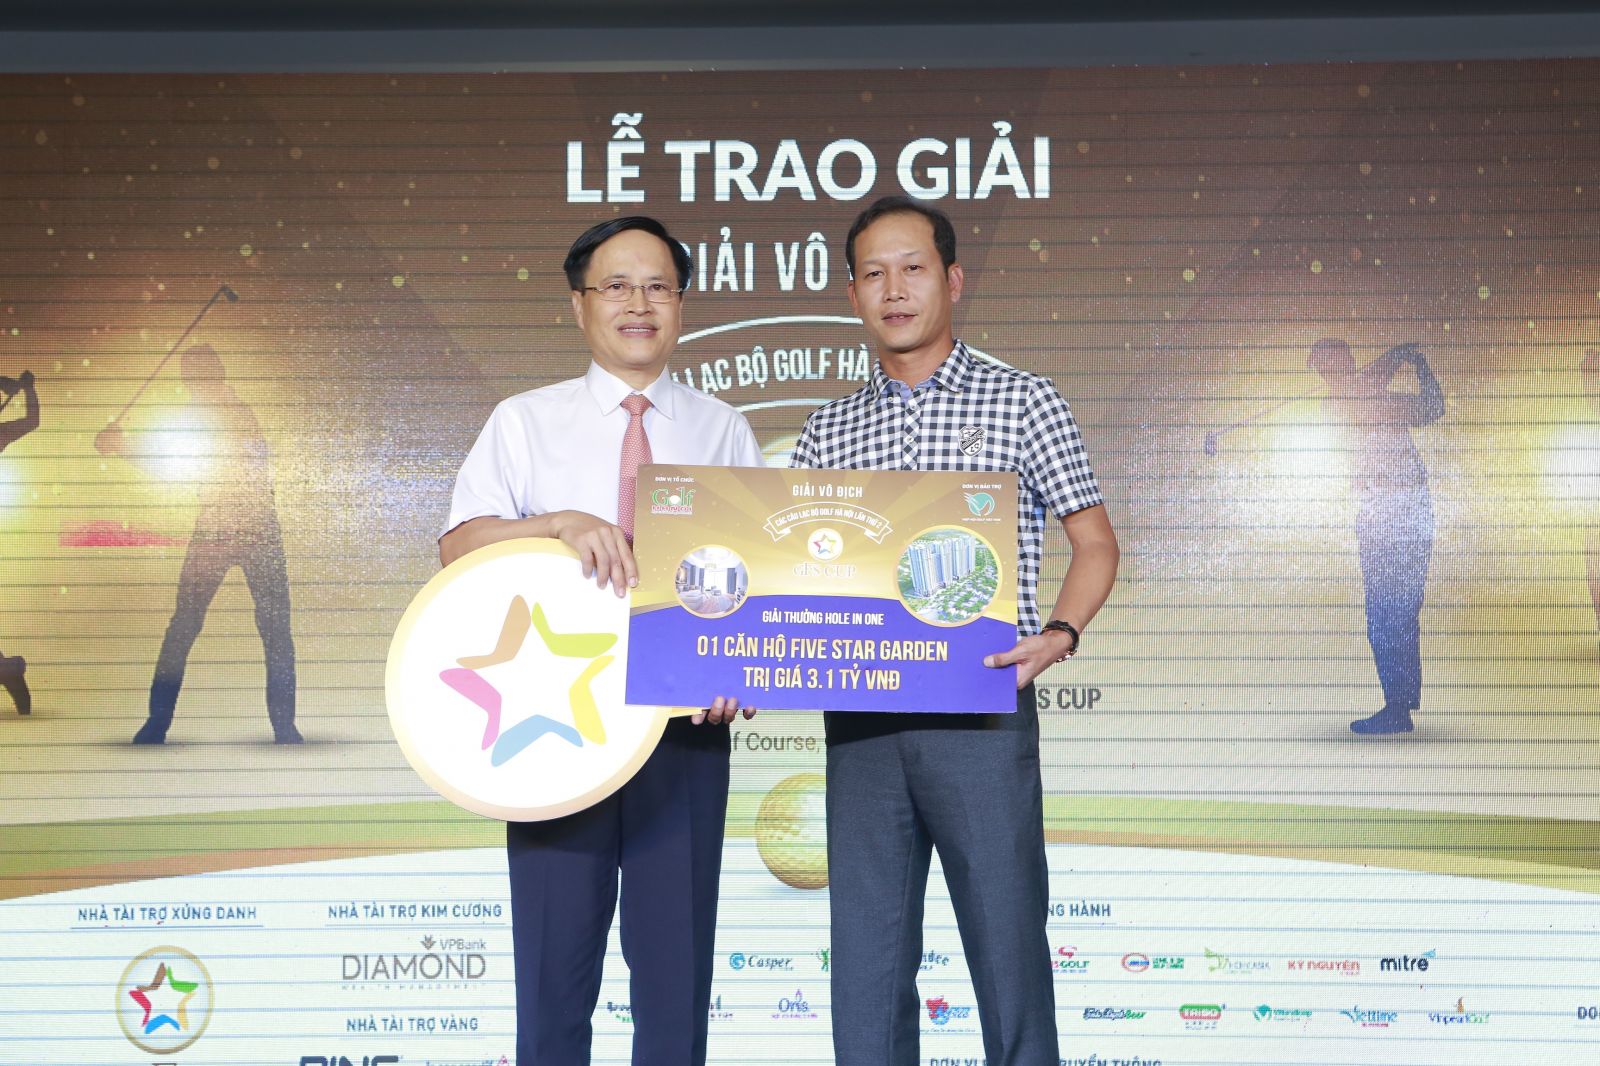 Ông Phạm Thành Công, Chủ tịch Tập đoàn GFS, nhà tài trợ xứng danh của Giải, trao giải Hole-in-One cho golfer Ngô Văn Dũng (bên phải).